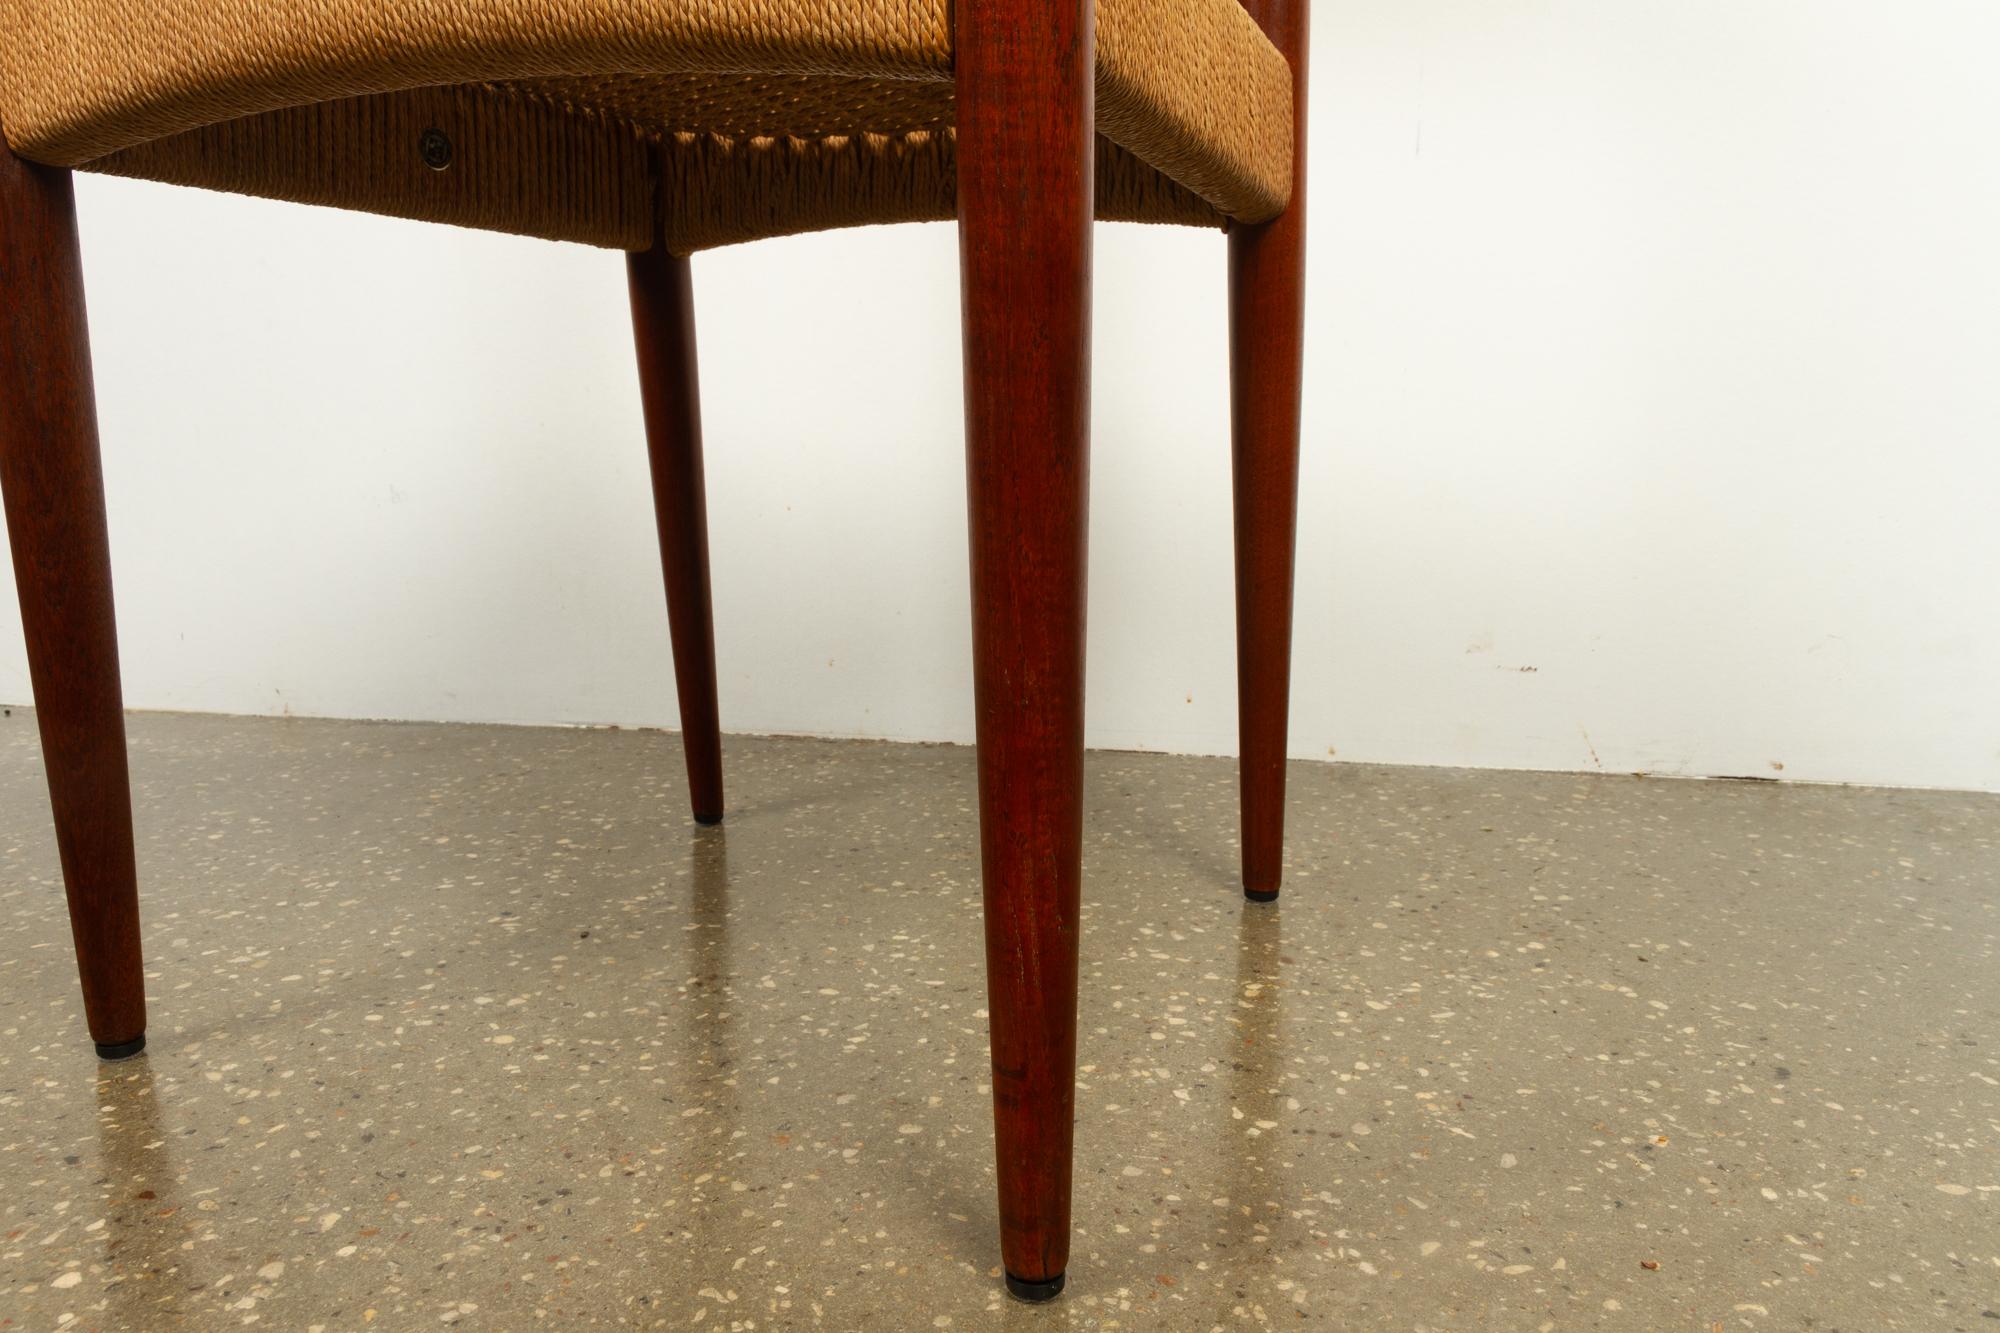 Vintage Danish Teak Chair by Arne Hovmand-Olsen for Mogens Kold, 1950s 3